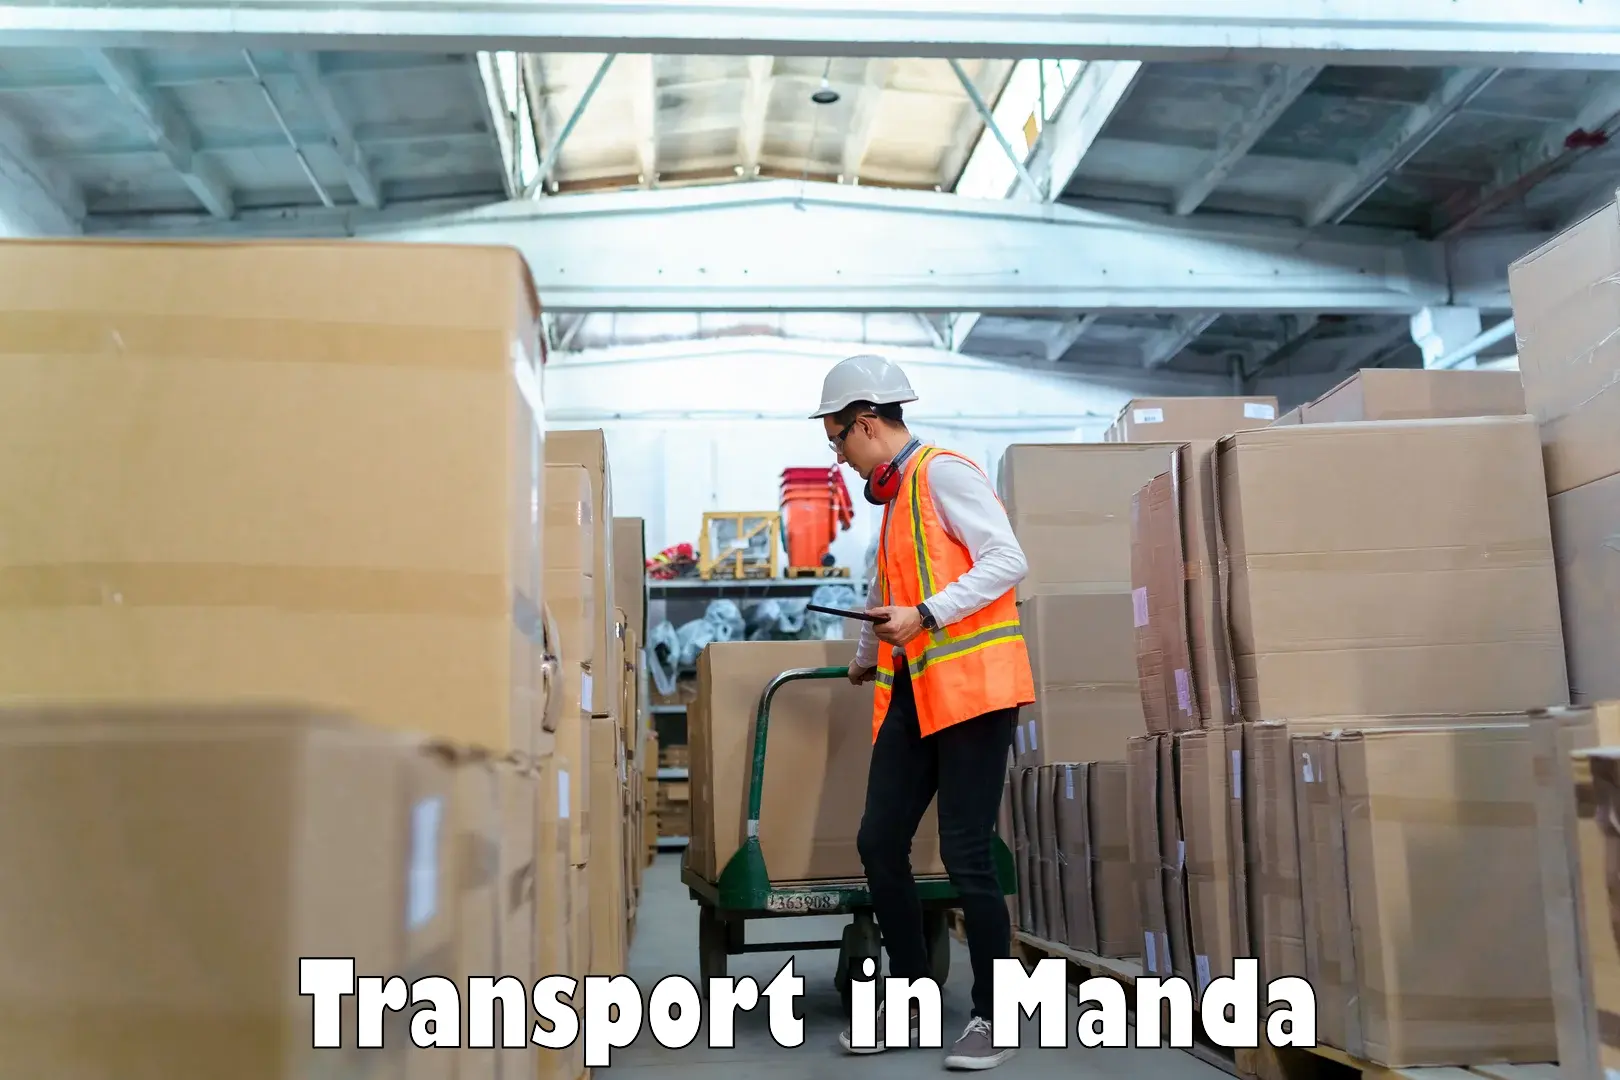 Furniture transport service in Manda